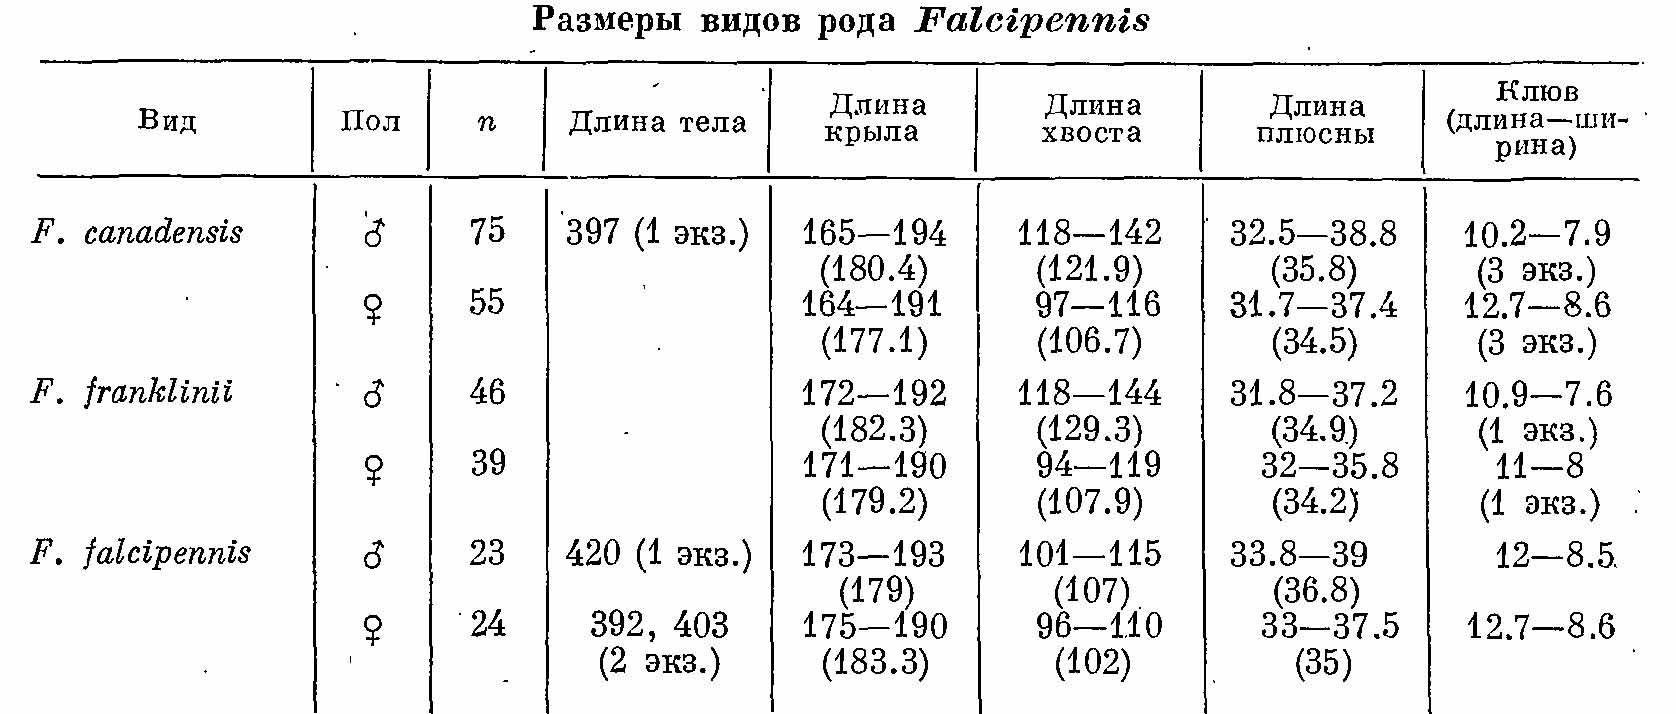 Таблица 1. Размеры видов рода Falcipennis.